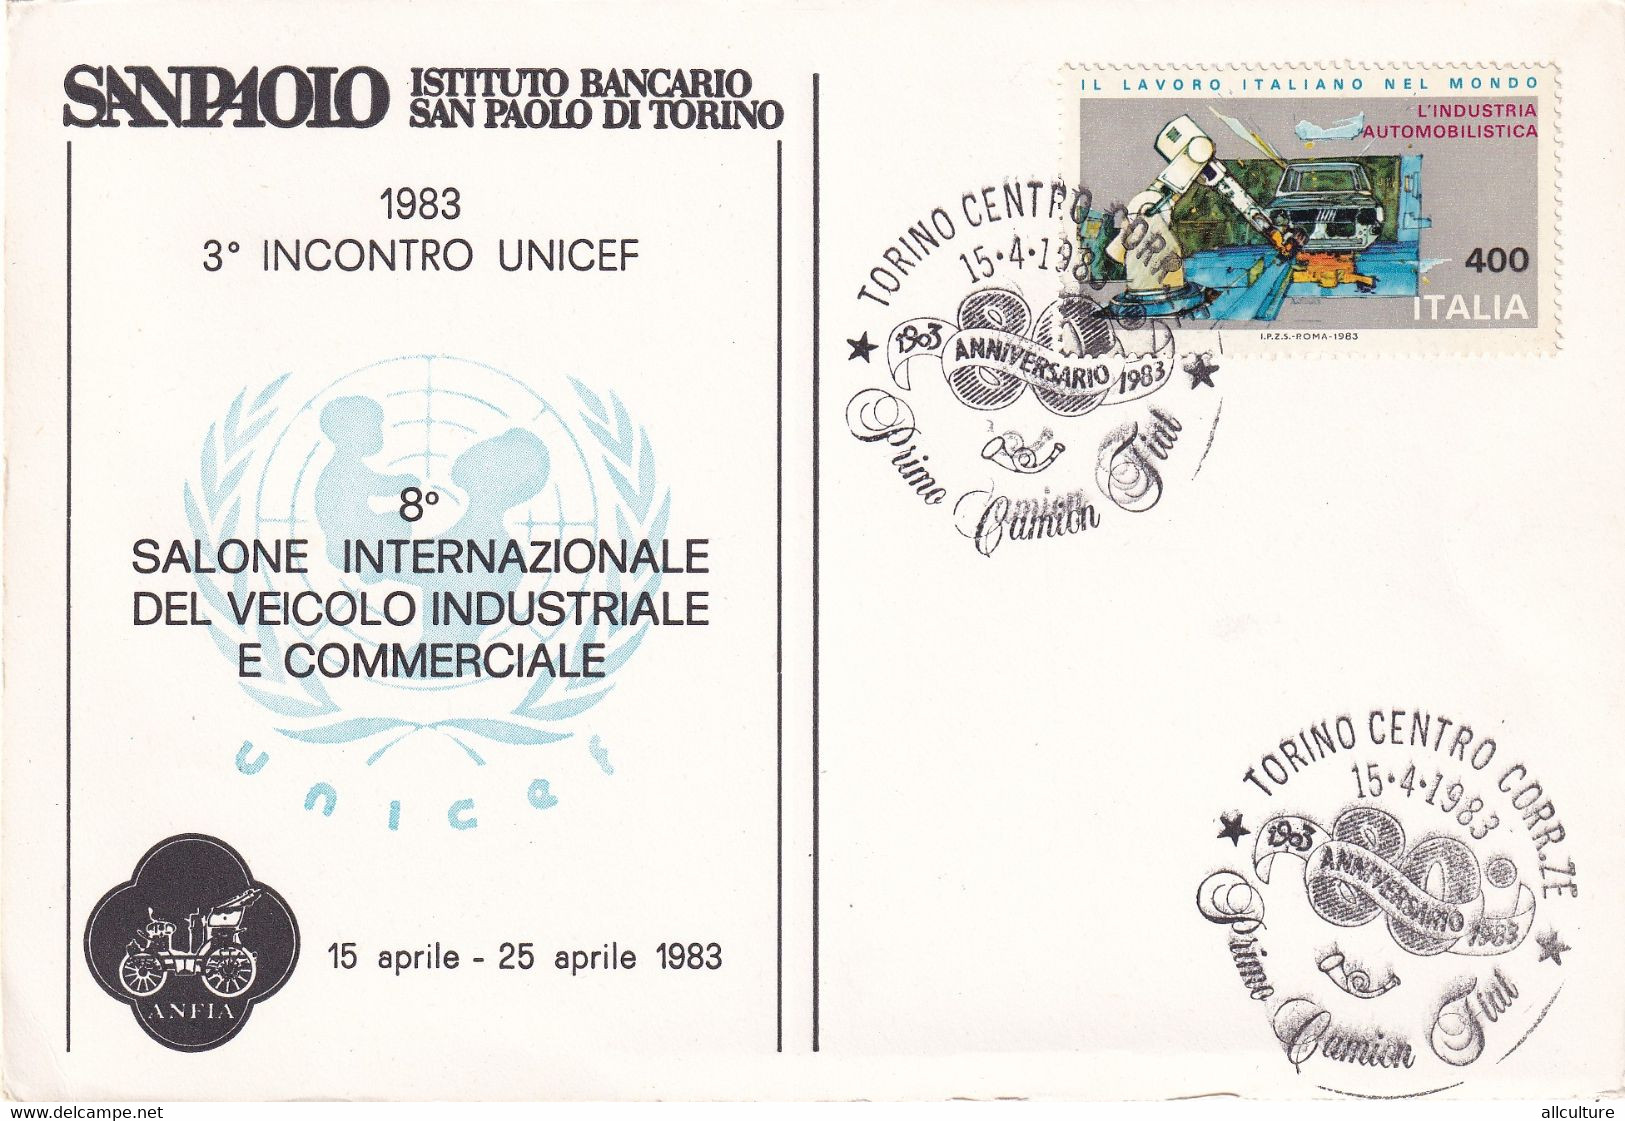 A10922- INSTITUTO BANCARIO SAN PAOLO DI TORINO, UNICEF- SALONE INTERNAZIONALE, ITALIA USED STAMP 1983 TORINO - UNICEF